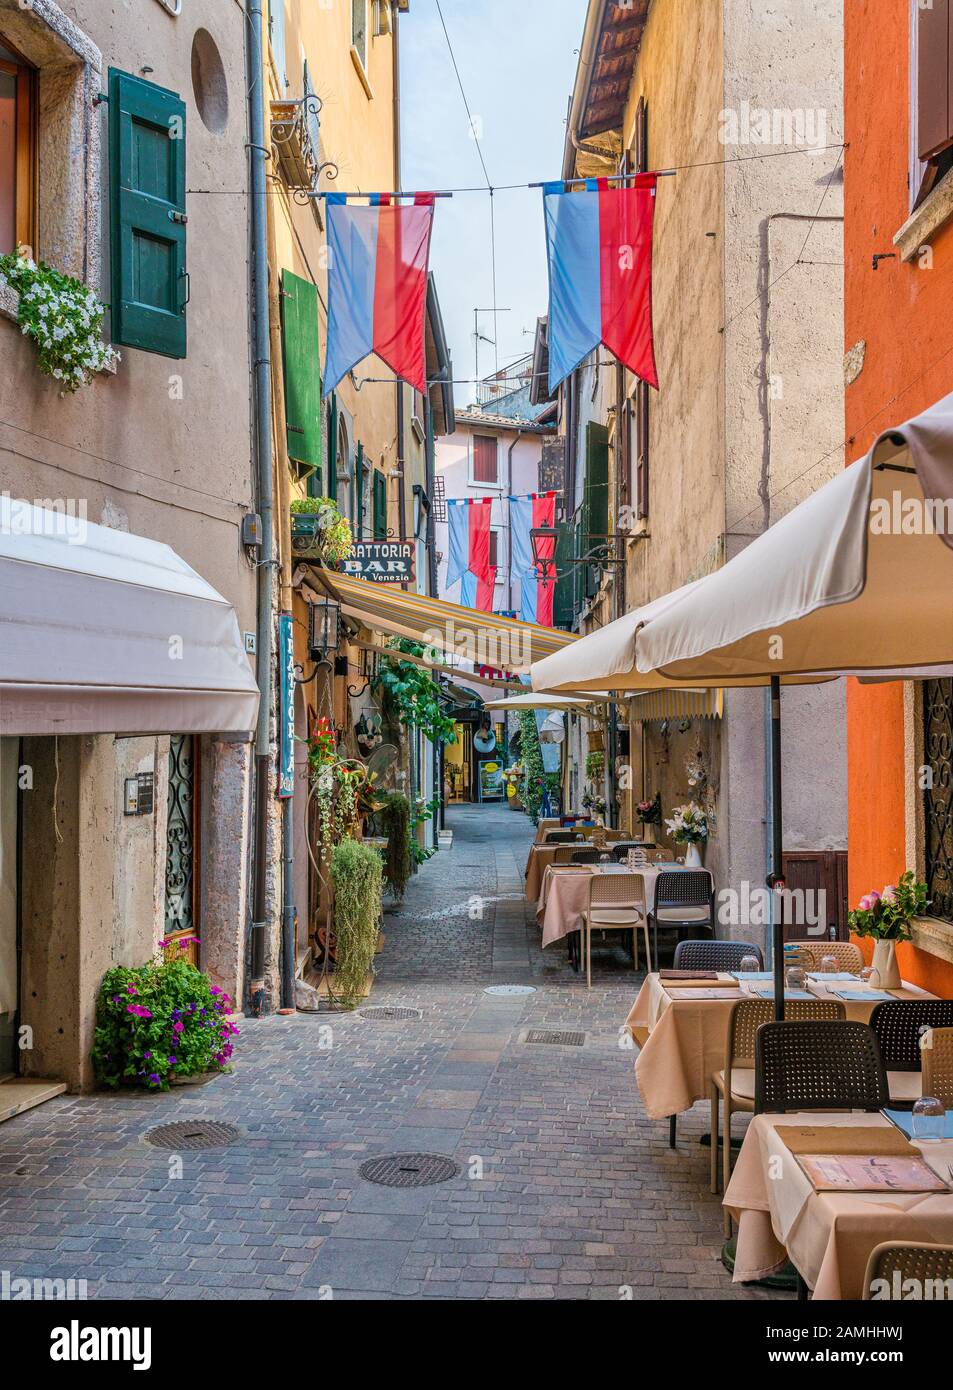 Vista panoramica estiva sul Garda, bellissima cittadina sul Lago di Garda. Veneto, Provincia Di Verona, Italia. Foto Stock